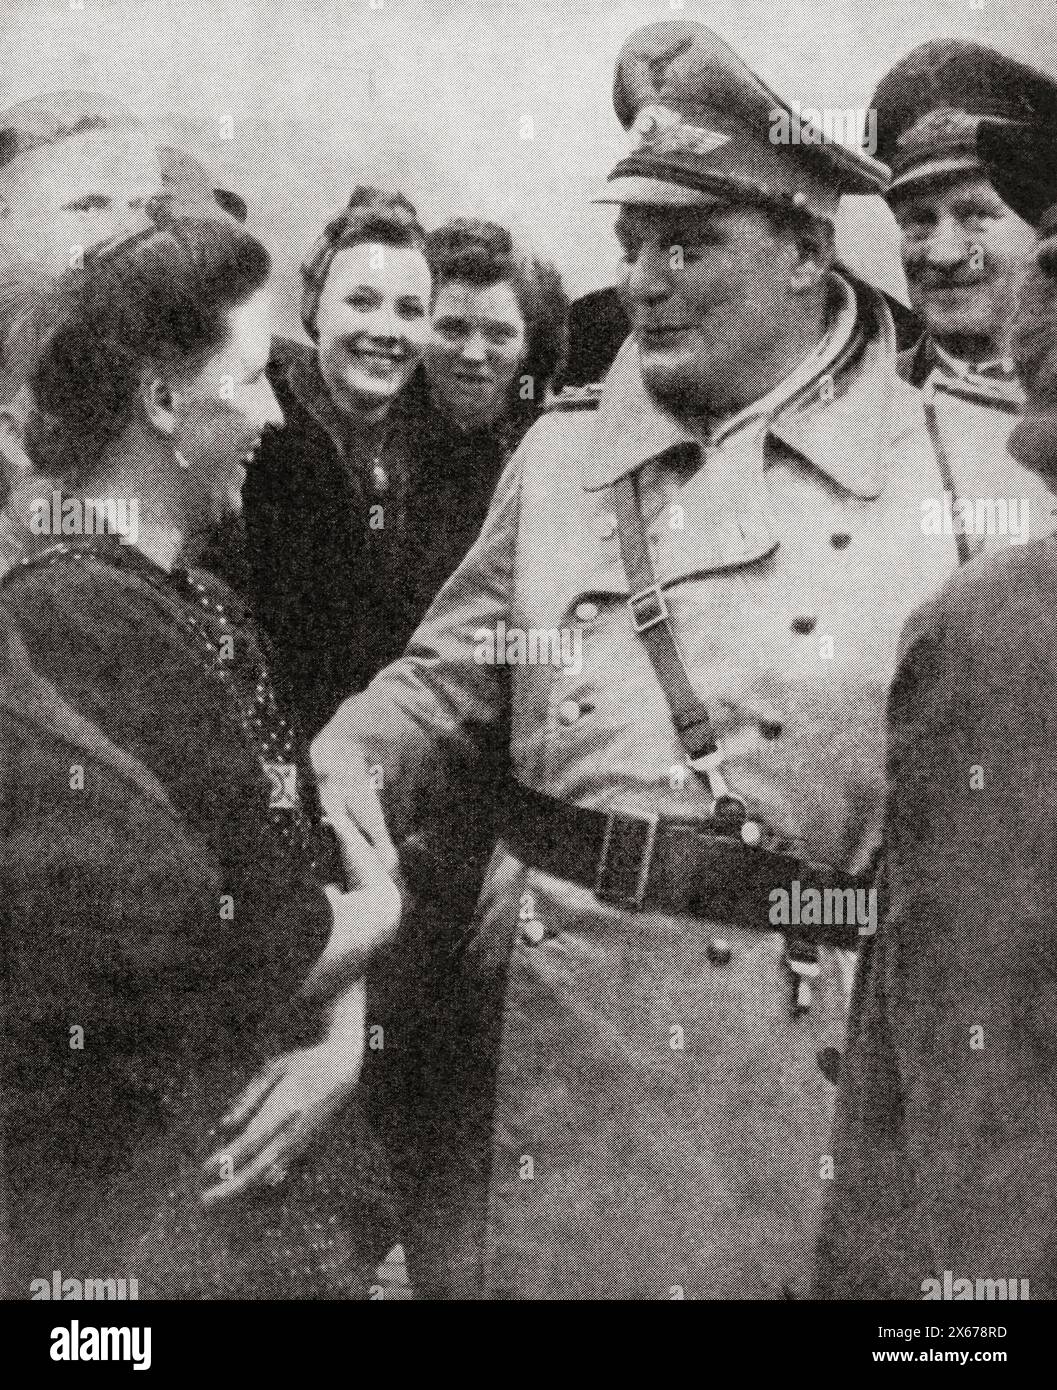 Hermann Wilhelm Göring oder Göring, 1893–1946. Deutscher Politiker, Militärführer und verurteilter Kriegsverbrecher. Ich habe hier Bombenschäden im Reich während des Zweiten Weltkriegs gesehen. Aus dem Krieg in Bildern, fünftes Jahr. Stockfoto